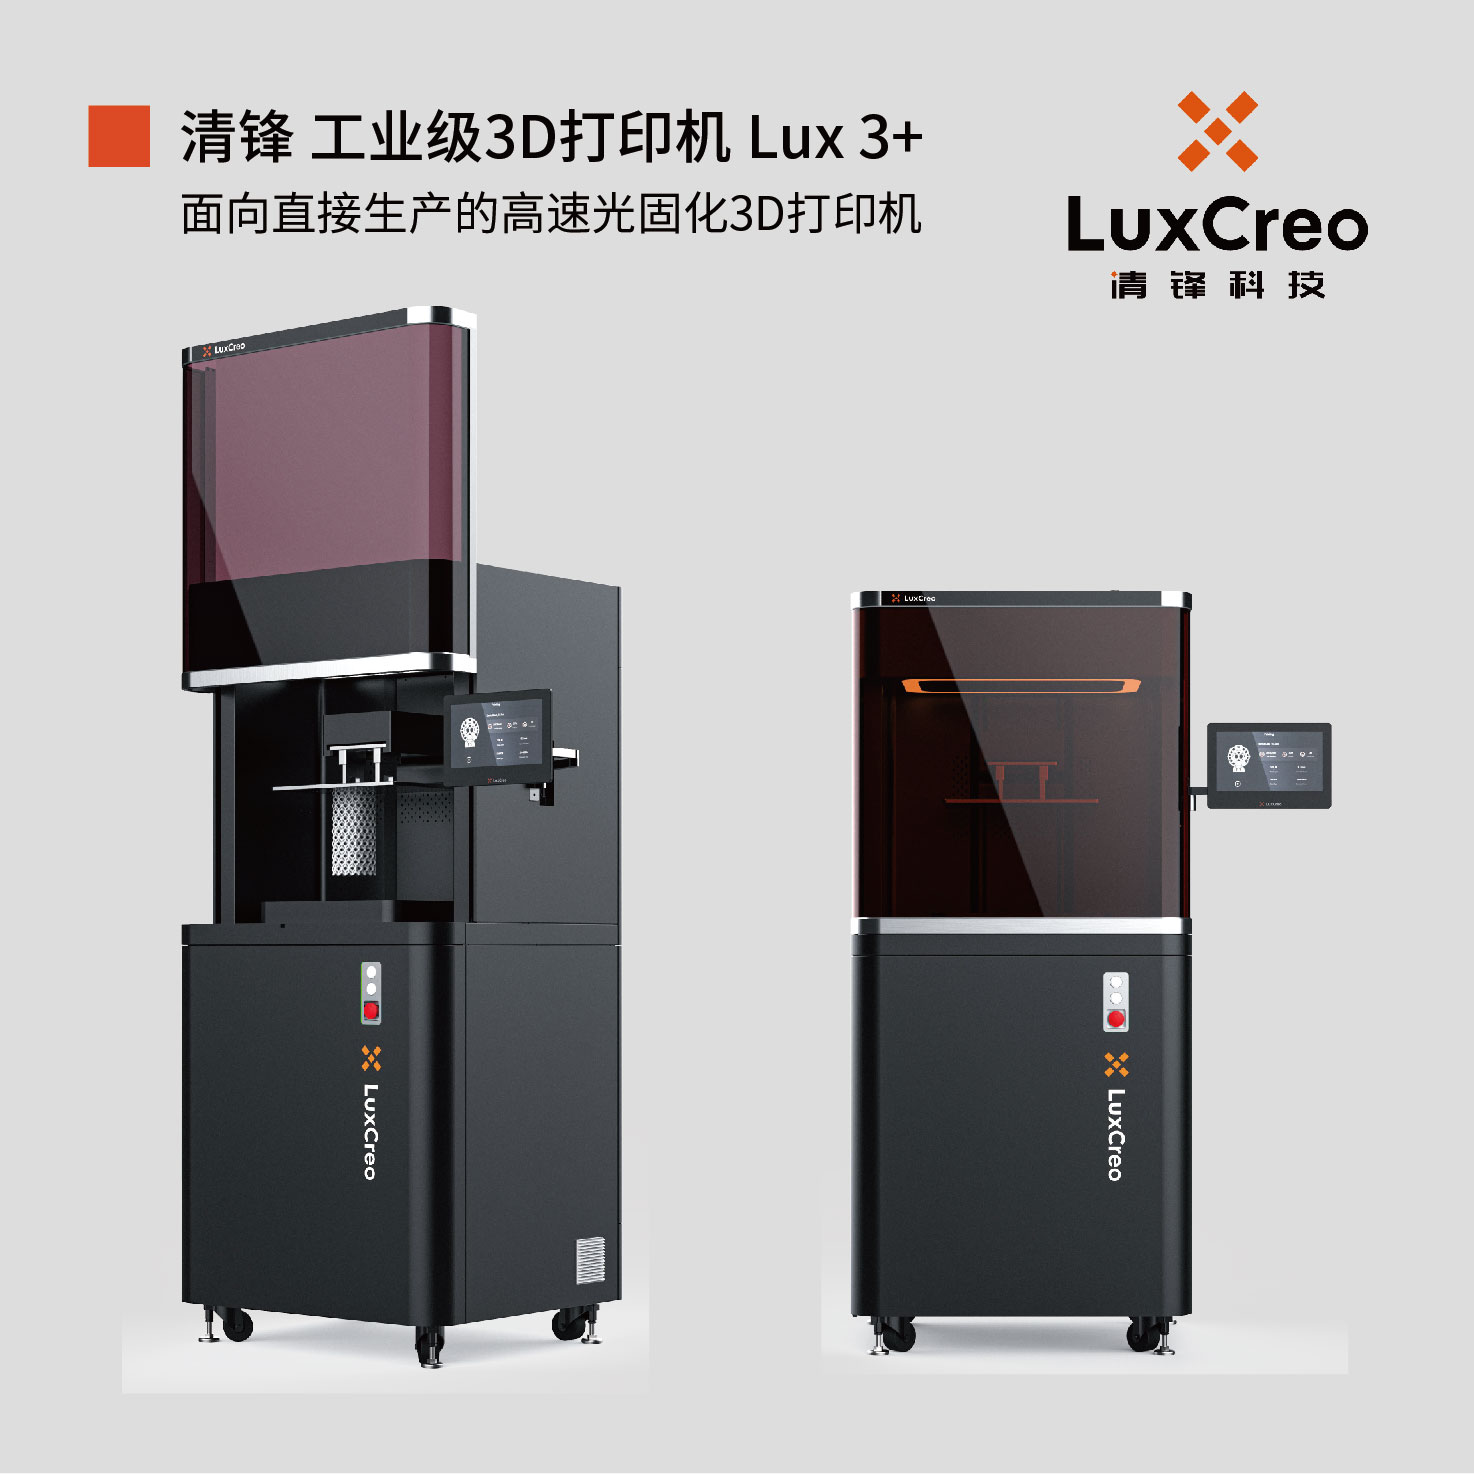 工业级DLP光固化3D打印机 Lux 3+｜LuxCreo清锋科技